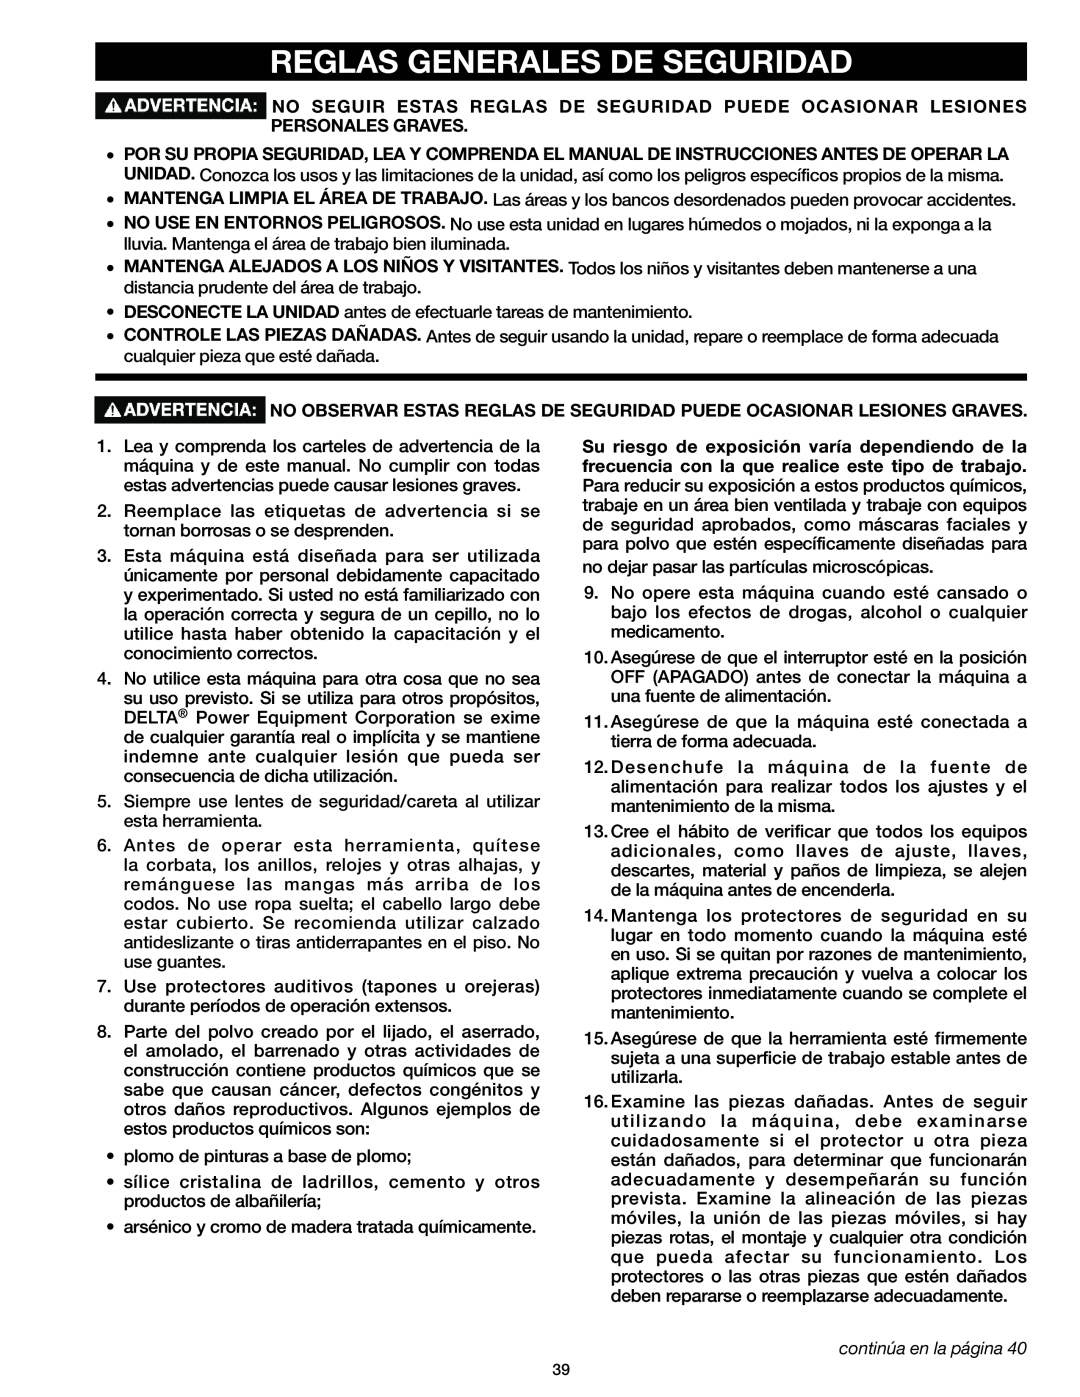 Delta 37-071 instruction manual Reglas Generales De Seguridad, continúa en la página 